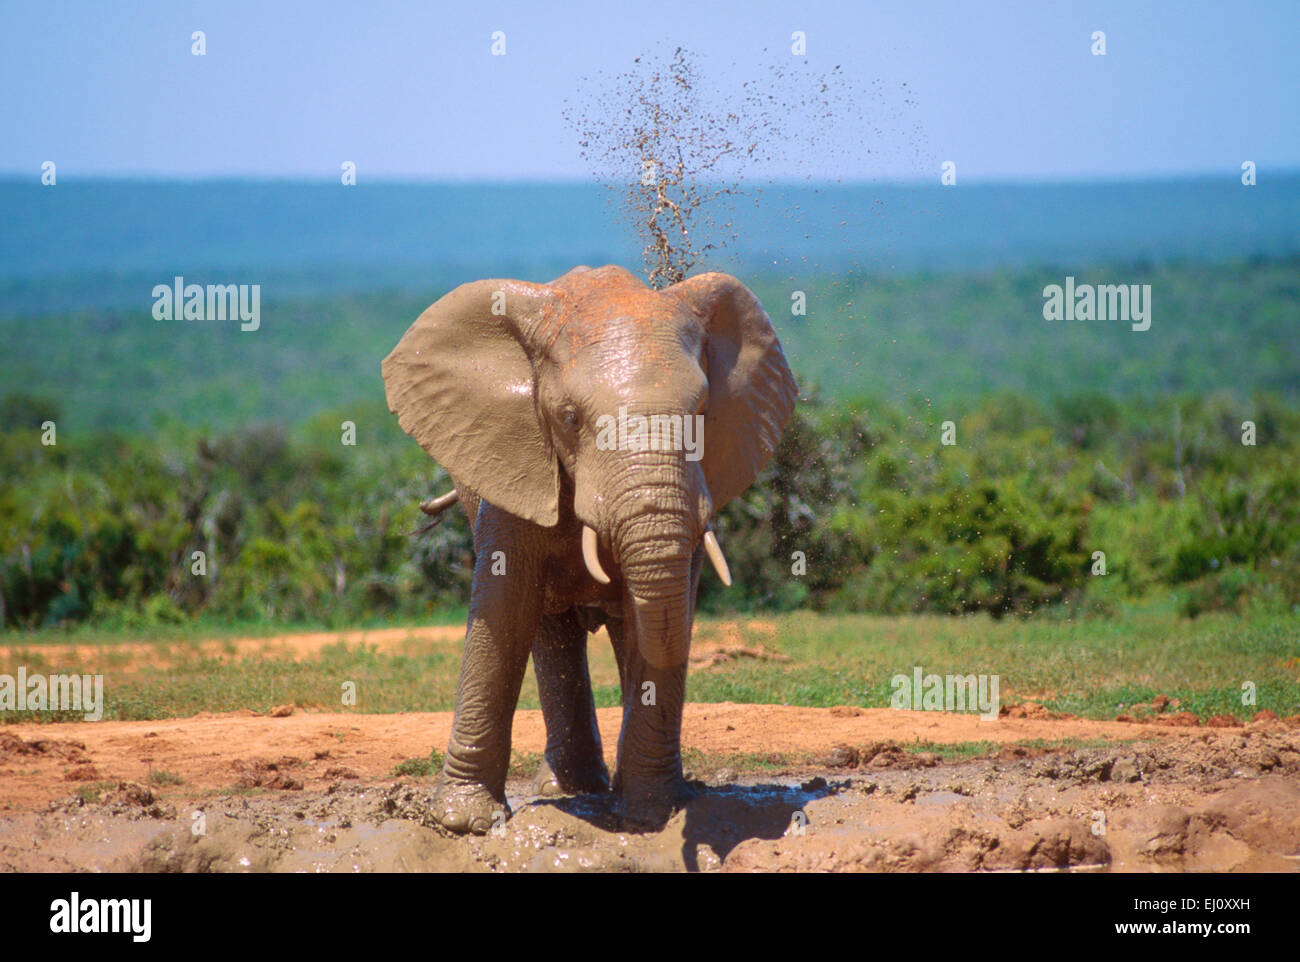 African Elephant, Loxodonta africana, Elephantidae, water whole, bathing, Elephant, mammal, animal, Addo Elephant, National Park, Stock Photo